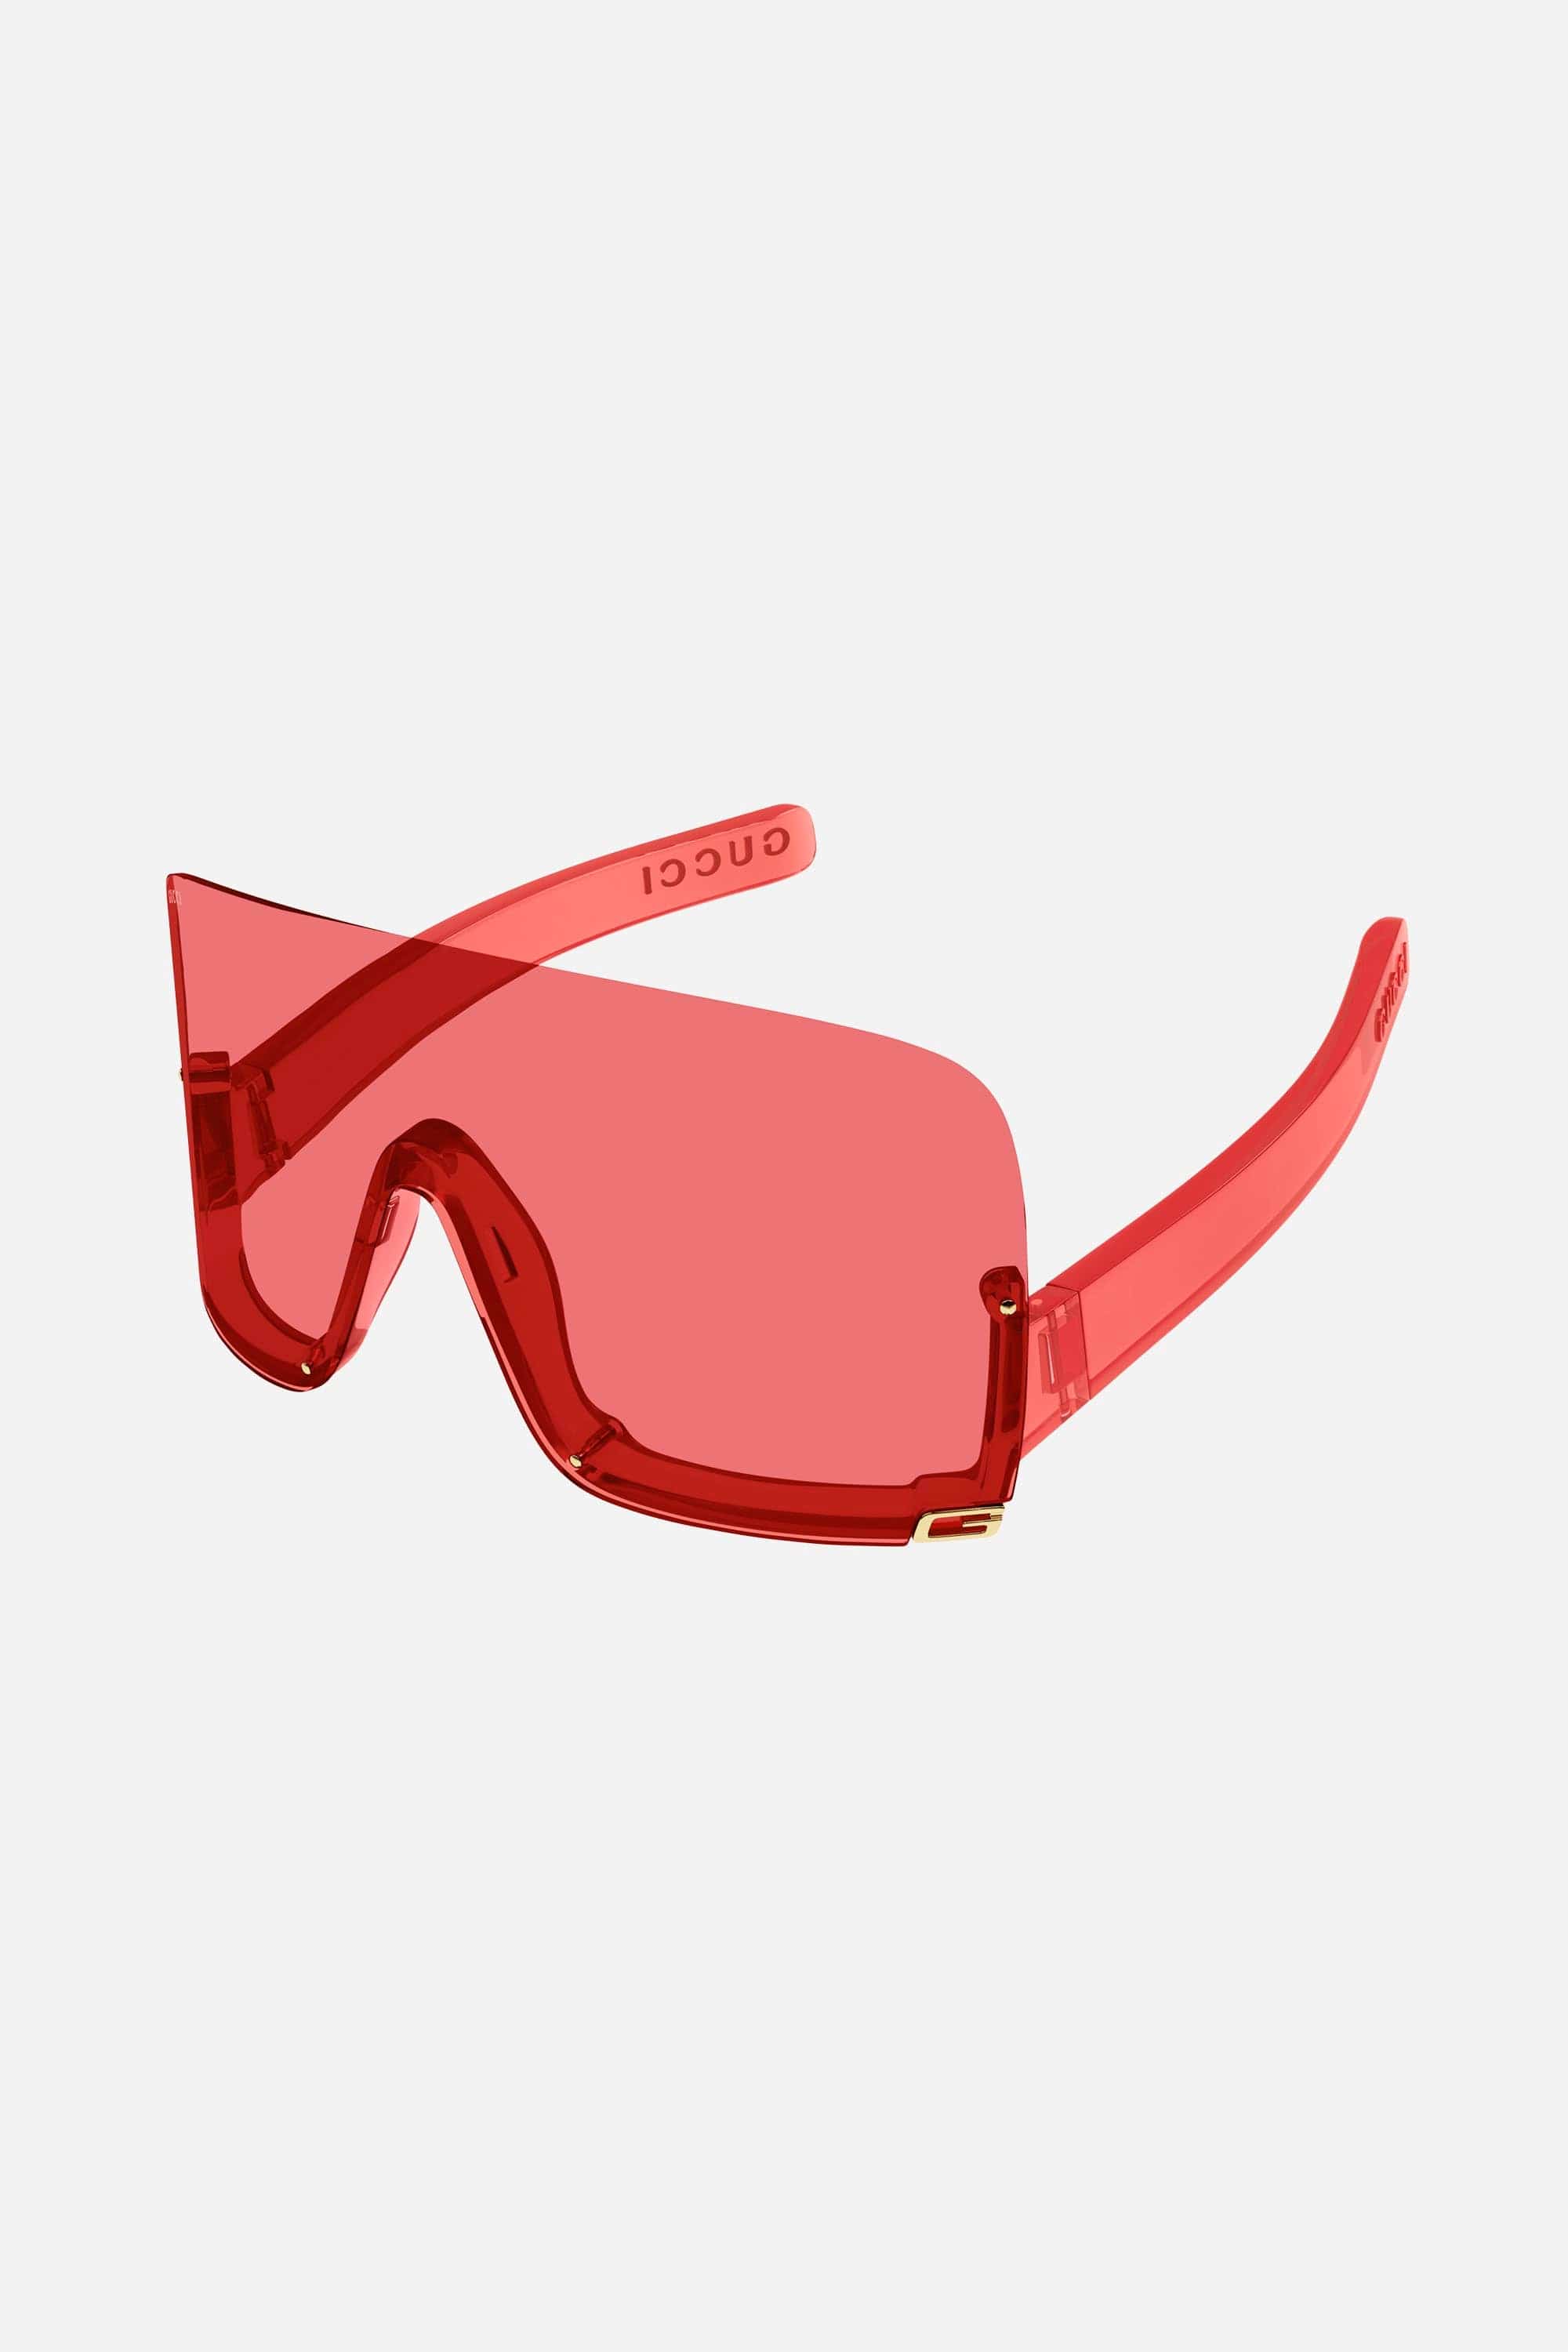 Gucci red fashion show mask sunglasses - Eyewear Club